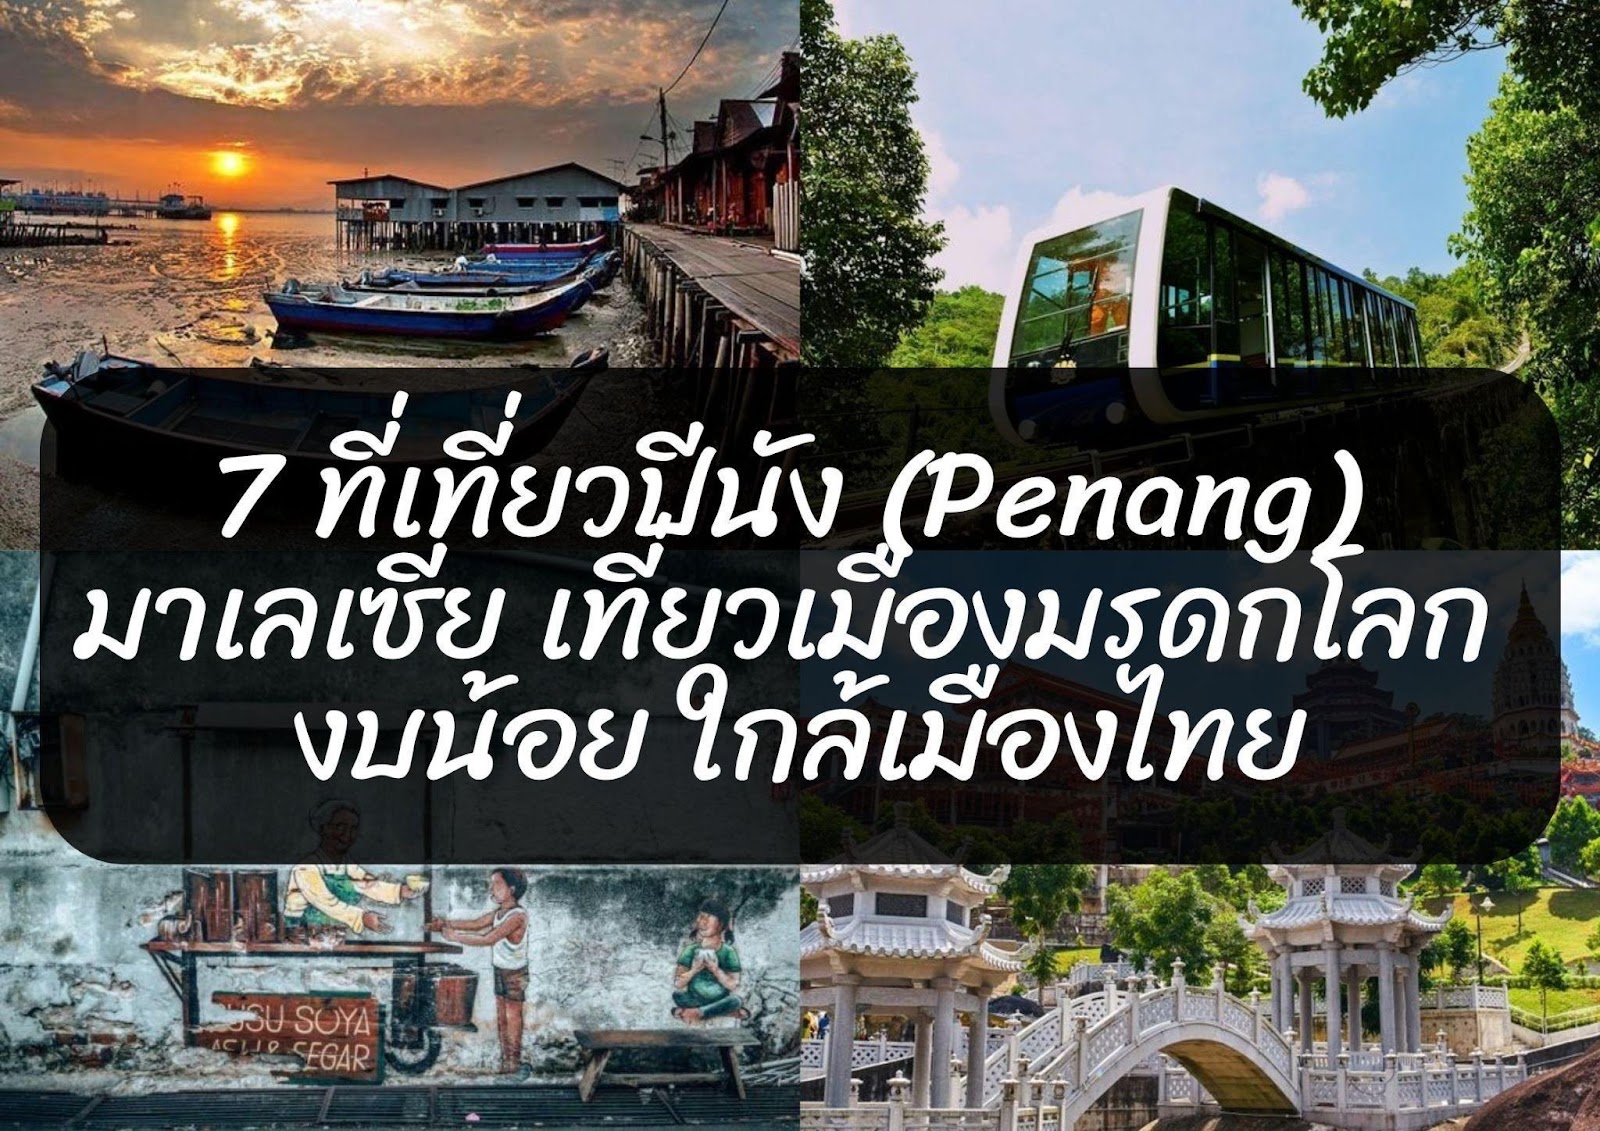 7 ที่เที่ยวปีนัง (Penang) มาเลเซีย เที่ยวเมืองมรดกโลก งบน้อย ใกล้เมืองไทย 1 